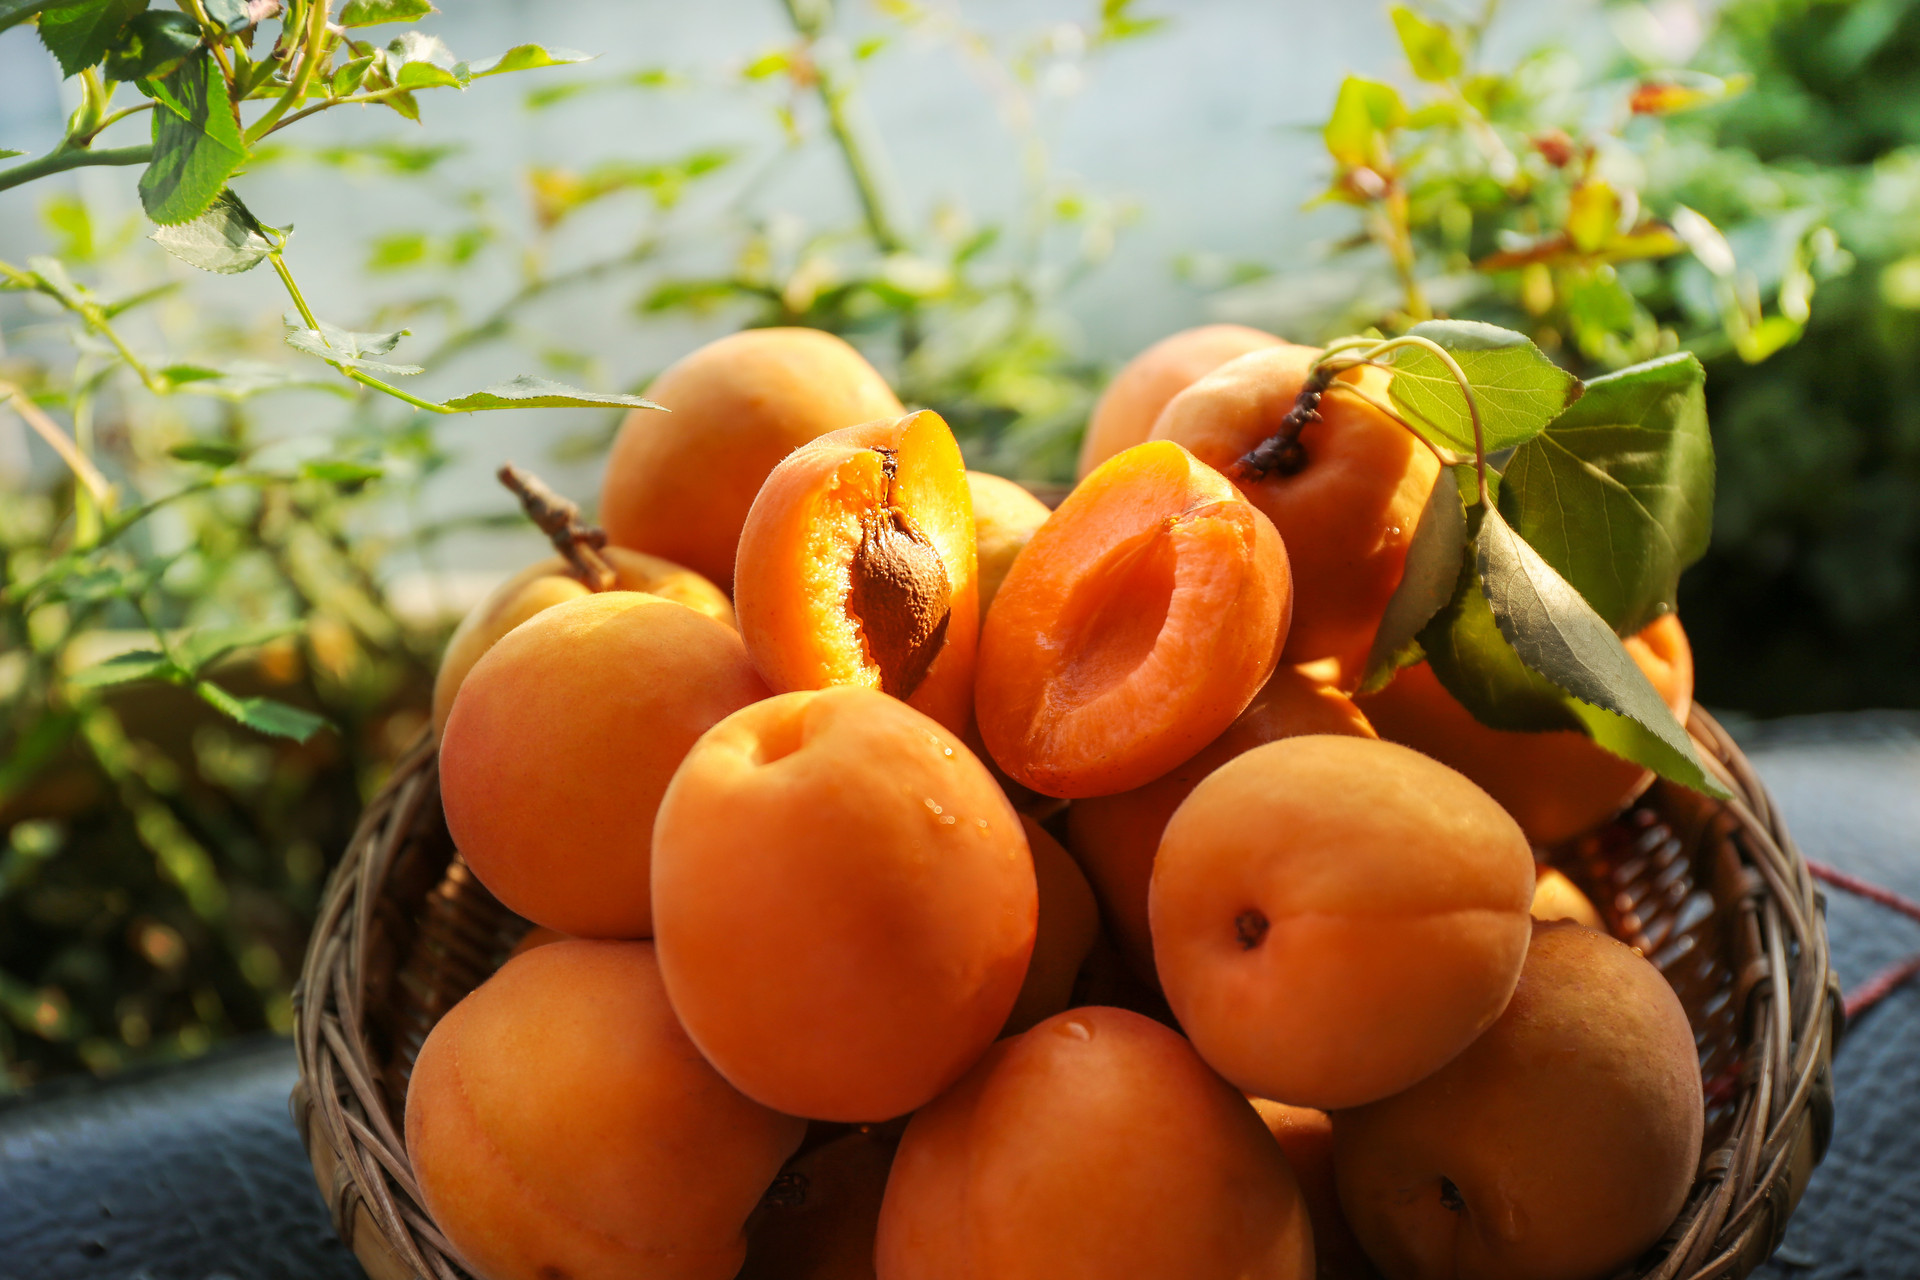 黄桃是什么季节的水果